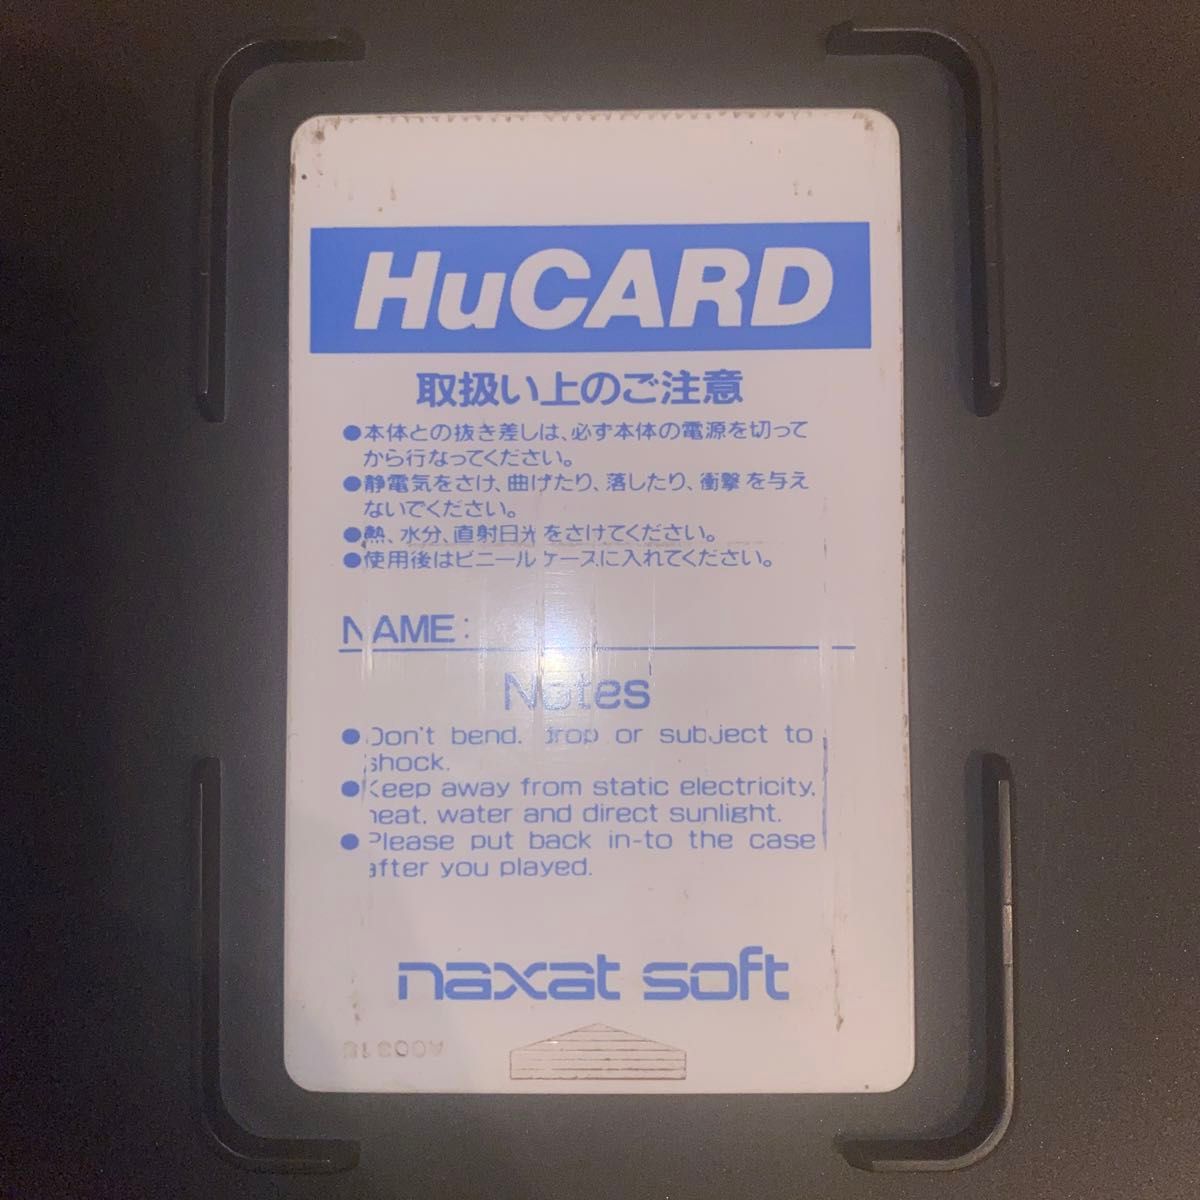 【PCエンジン】熱血高校ドッジボール部PC番外編 【Hu CARD】PC Engine ナグザット naxat soft 